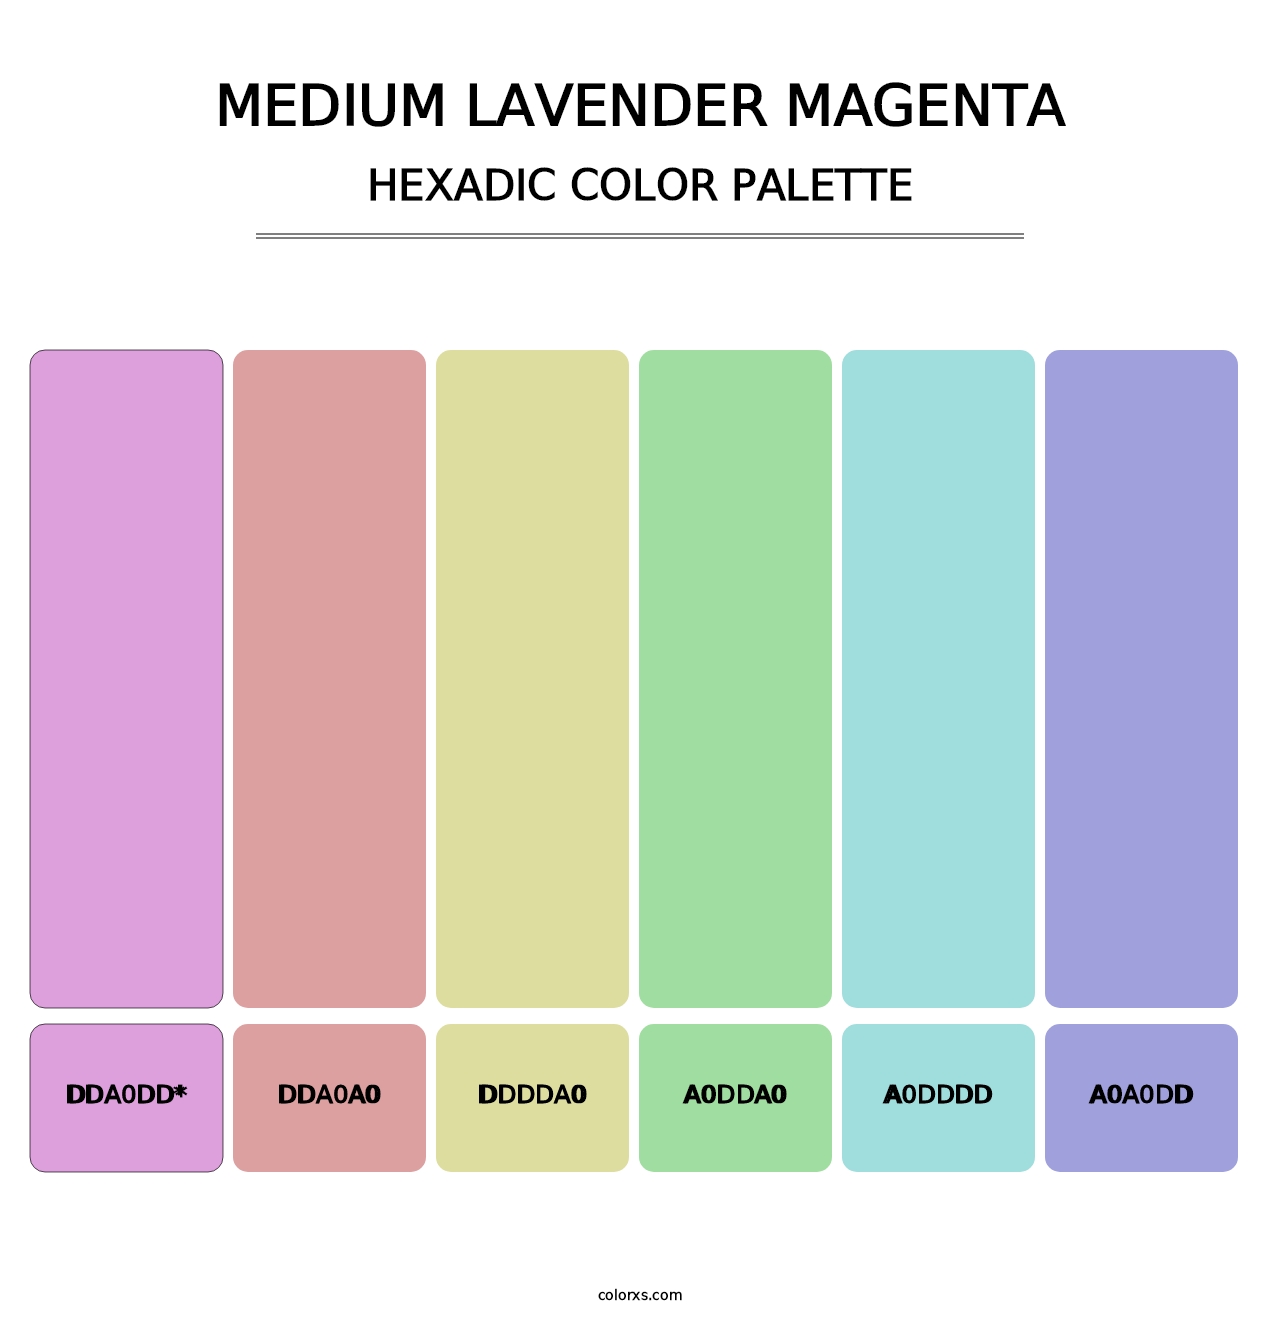 Medium Lavender Magenta - Hexadic Color Palette